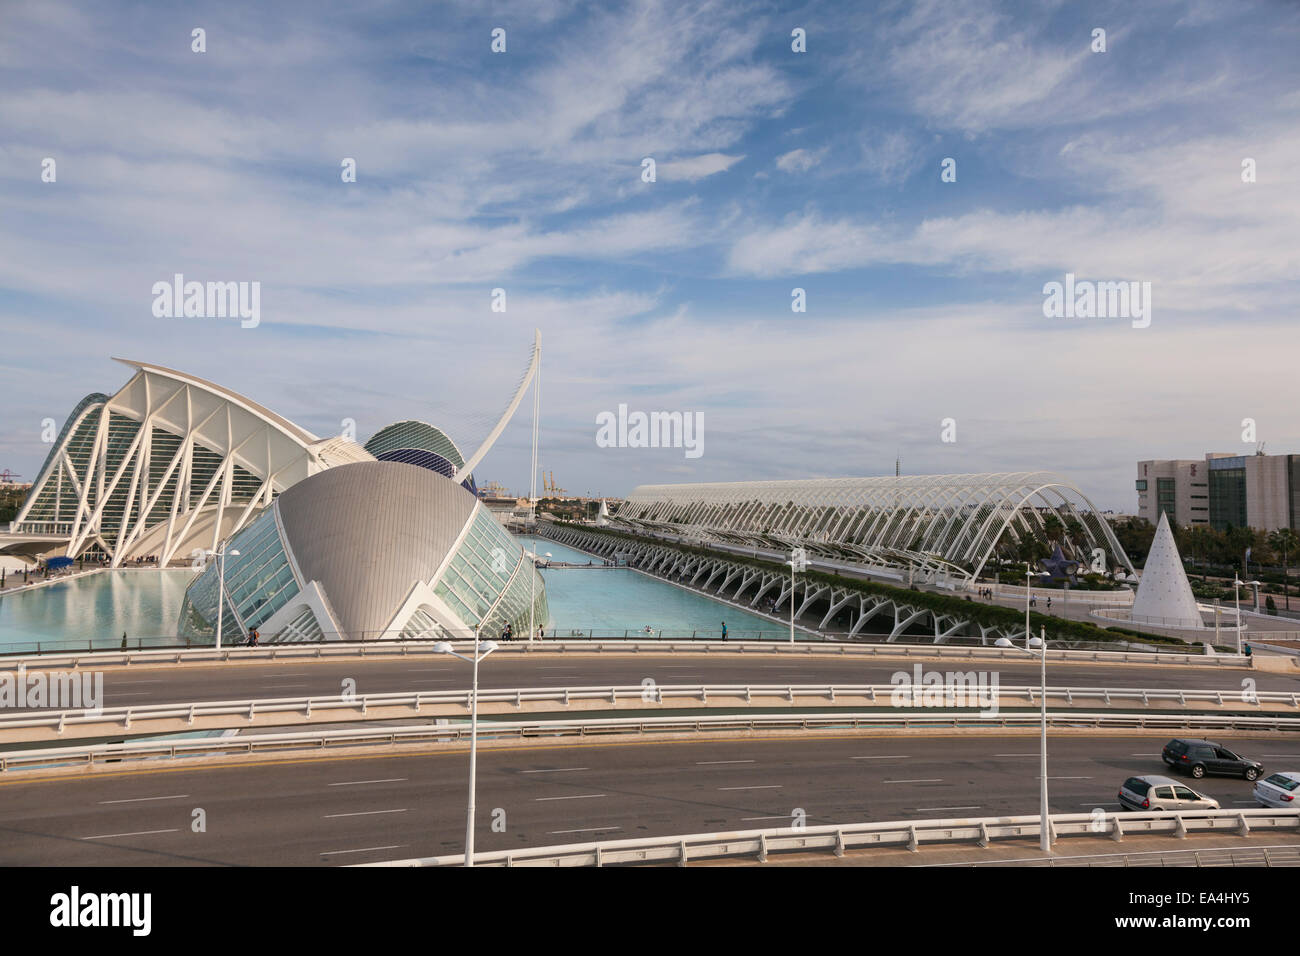 Vue sur l'hemisferic au pont de grau dans la ville des arts et des sciences, Valence, Espagne. Banque D'Images